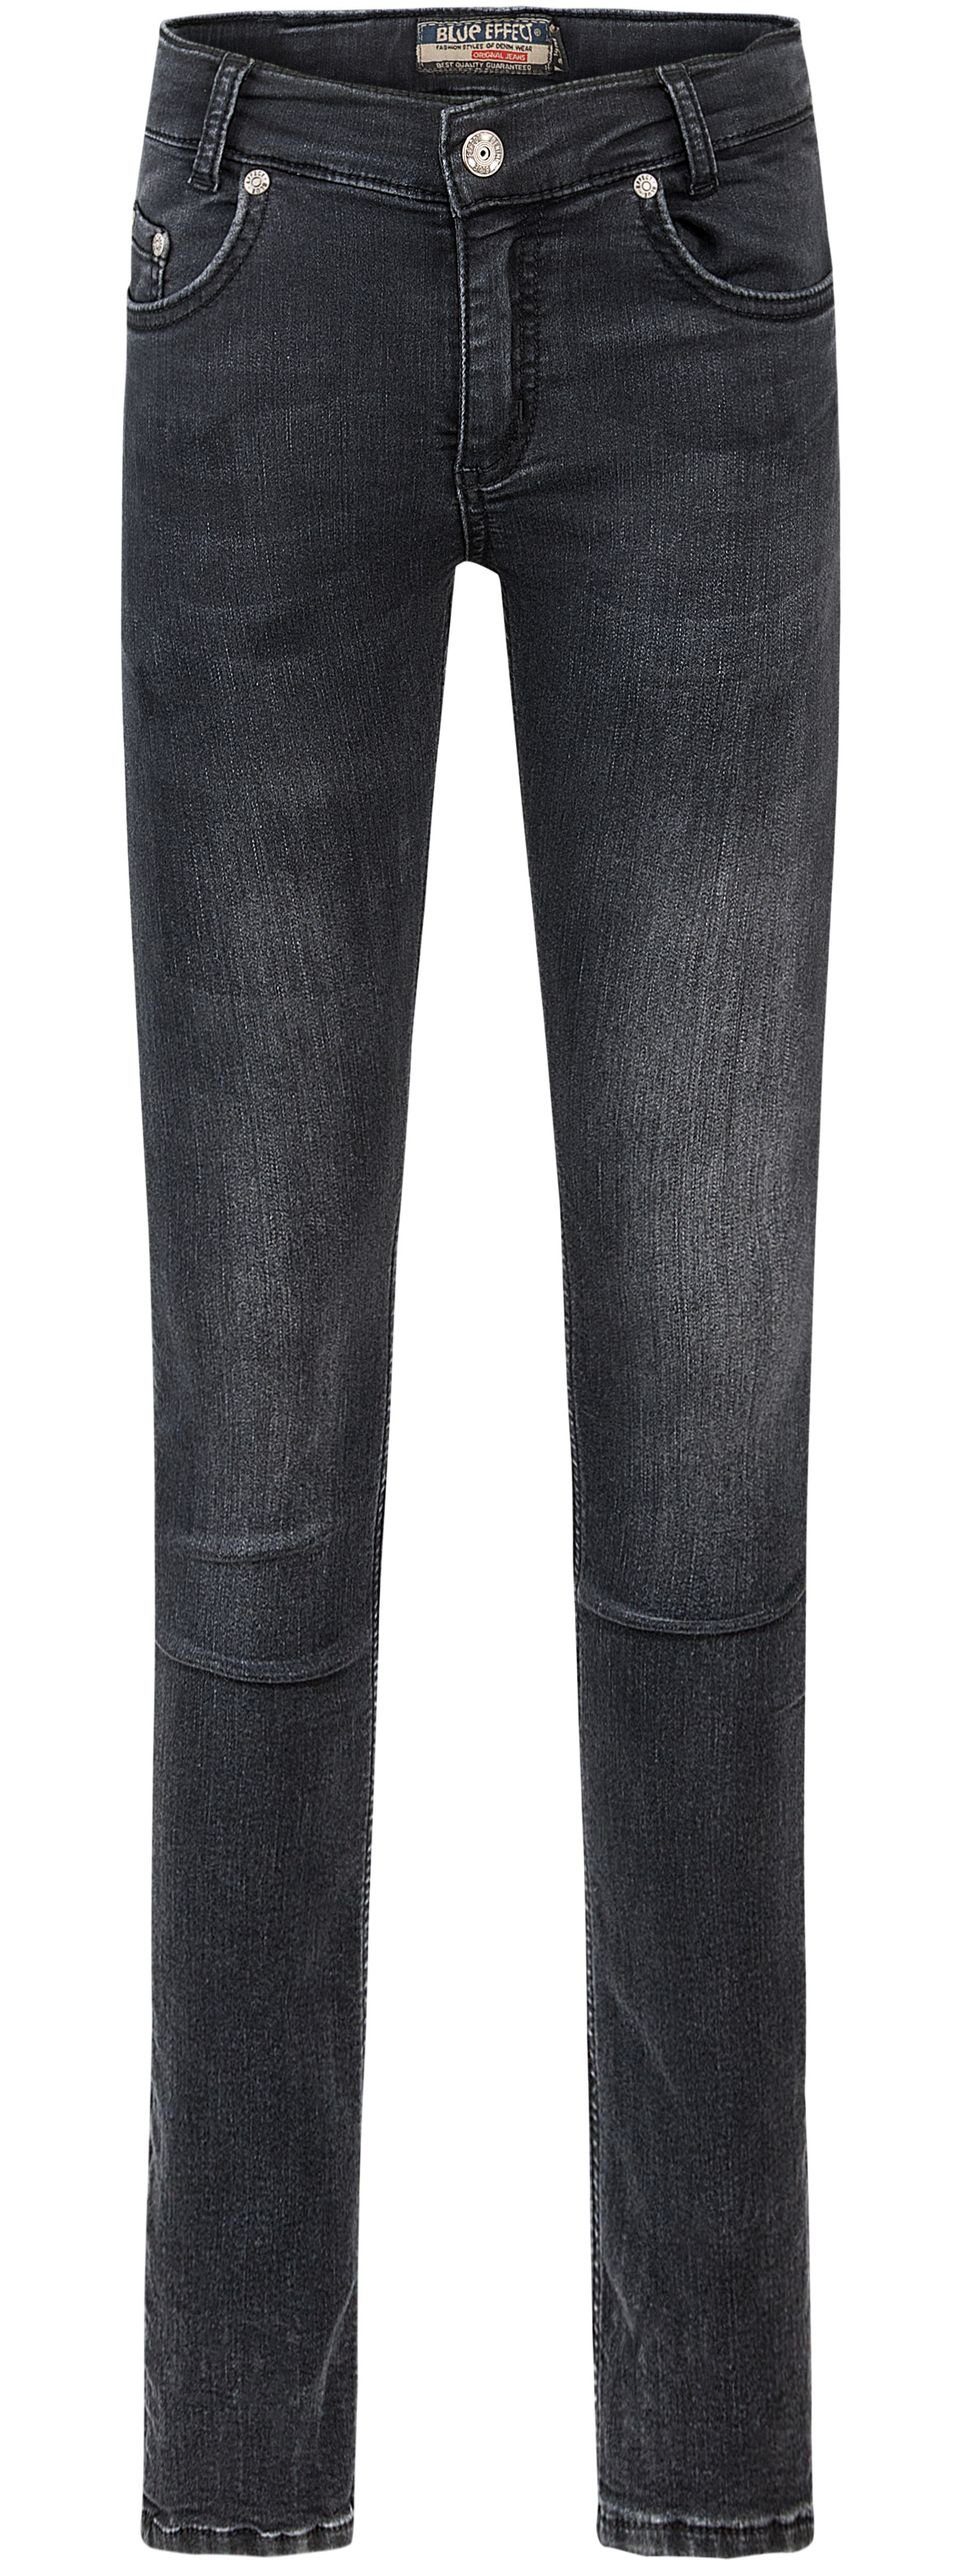 BLUE EFFECT black Hose Slim-fit-Jeans fit ultrastretch slim Jeans Skinny